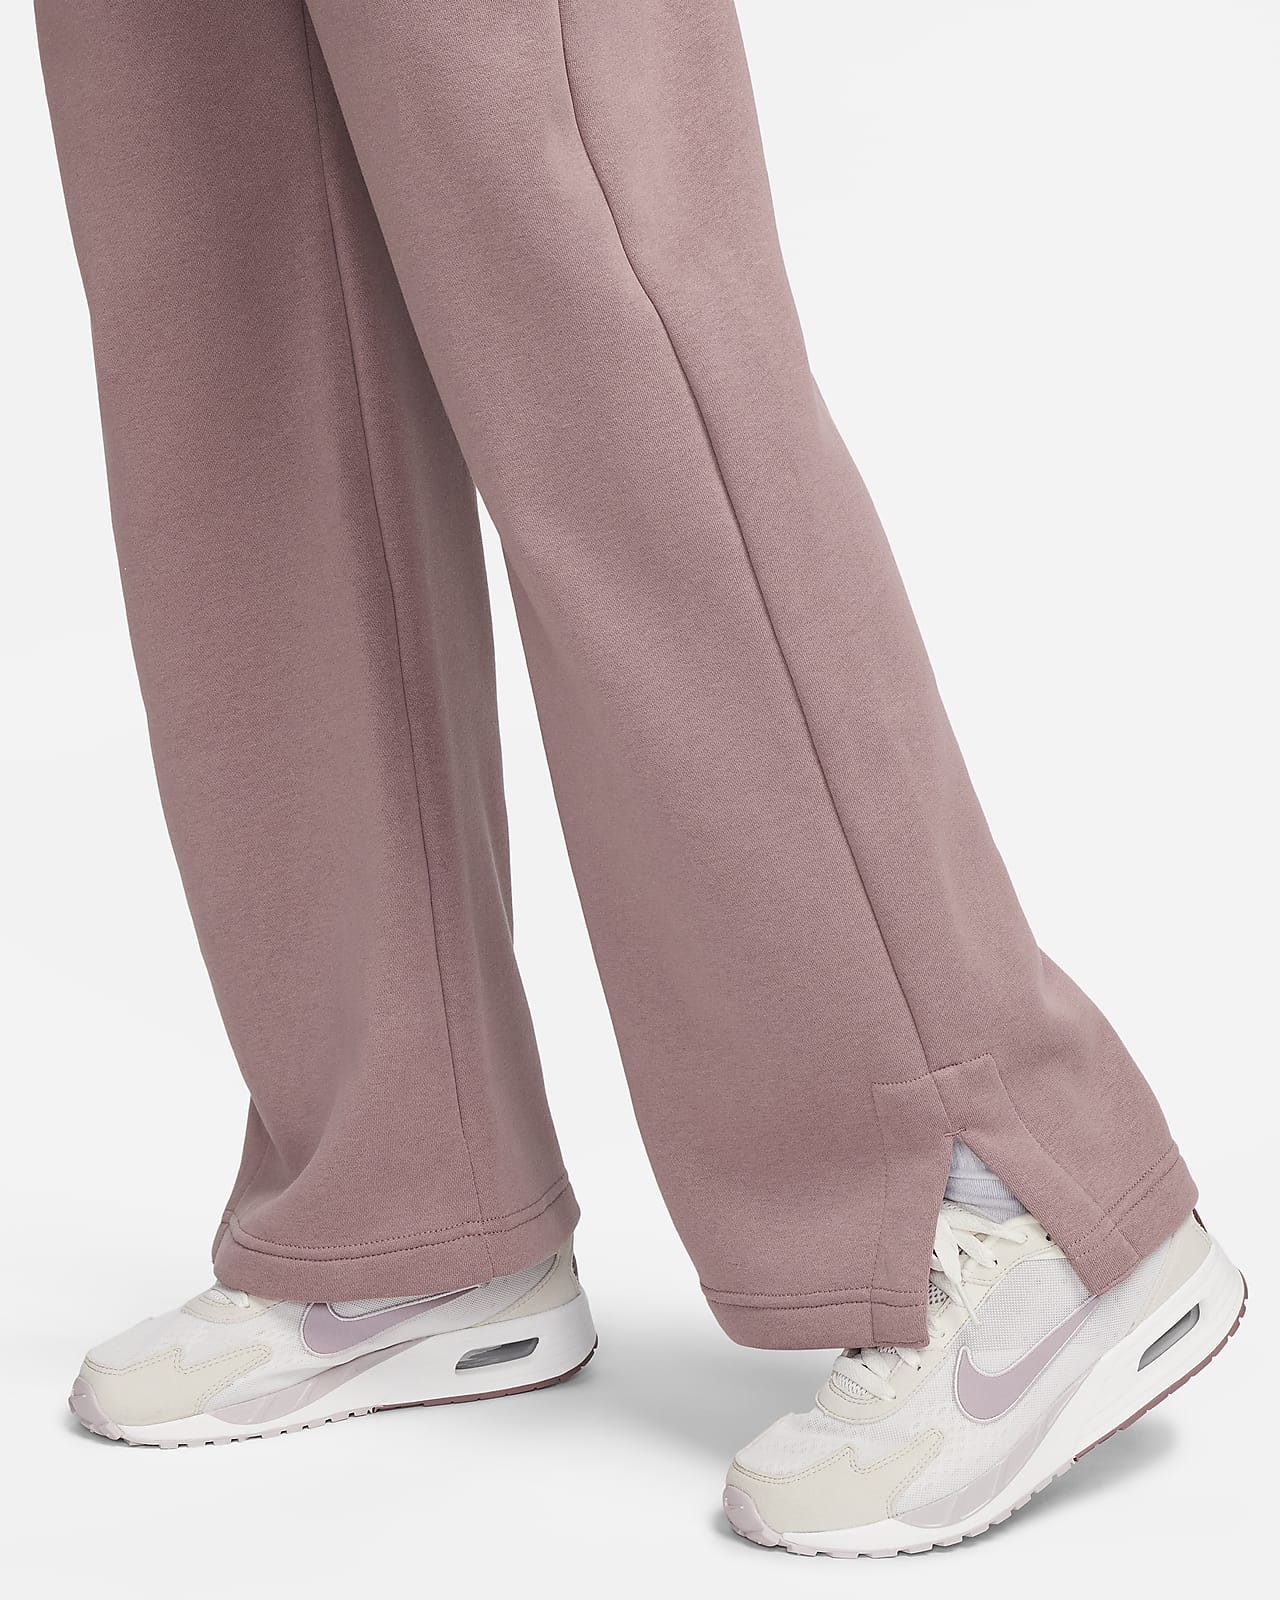 Pantalon de jogging en tissu Fleece Nike Sportswear pour femme